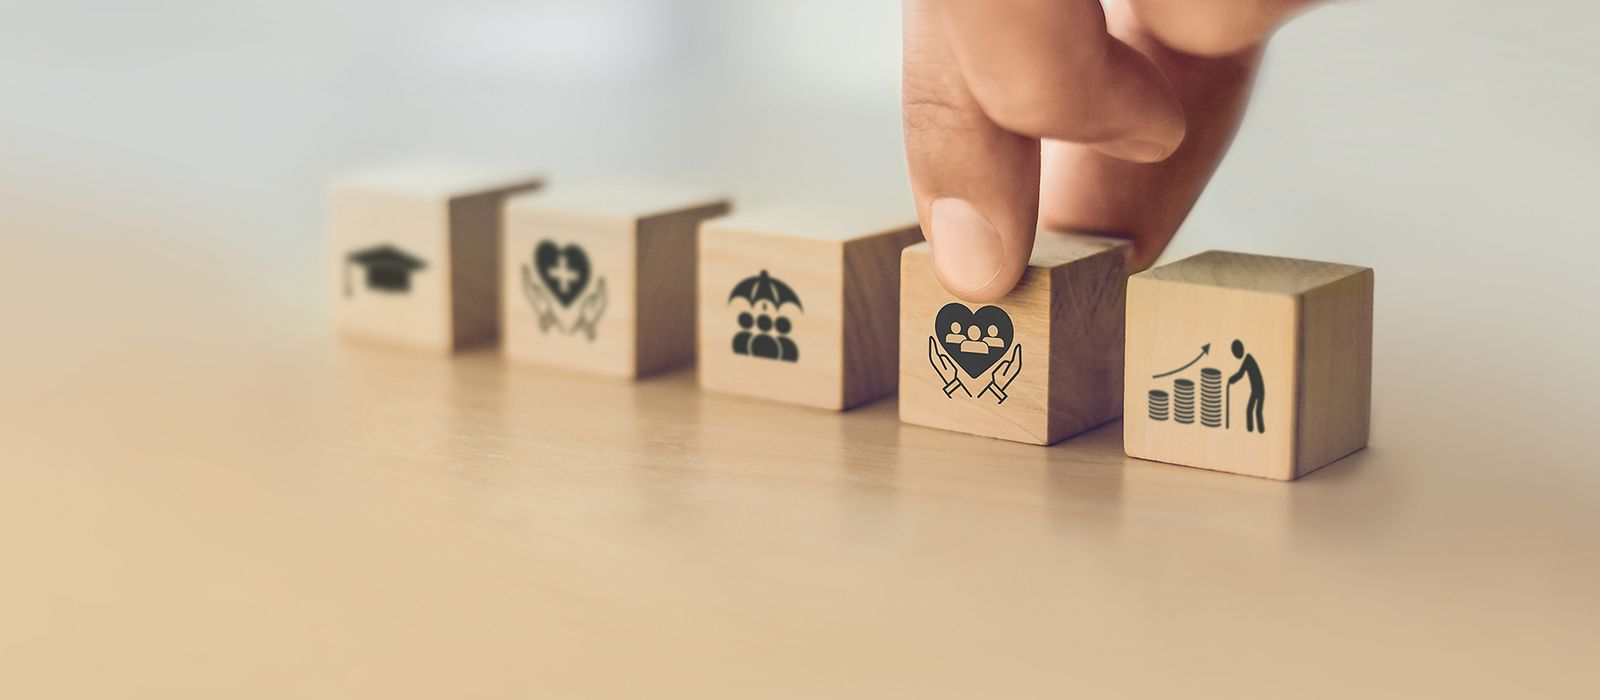 5 Holzwürfel mit verschiedenen gesellschaftsbezogenen Symbolen in einer Reihe